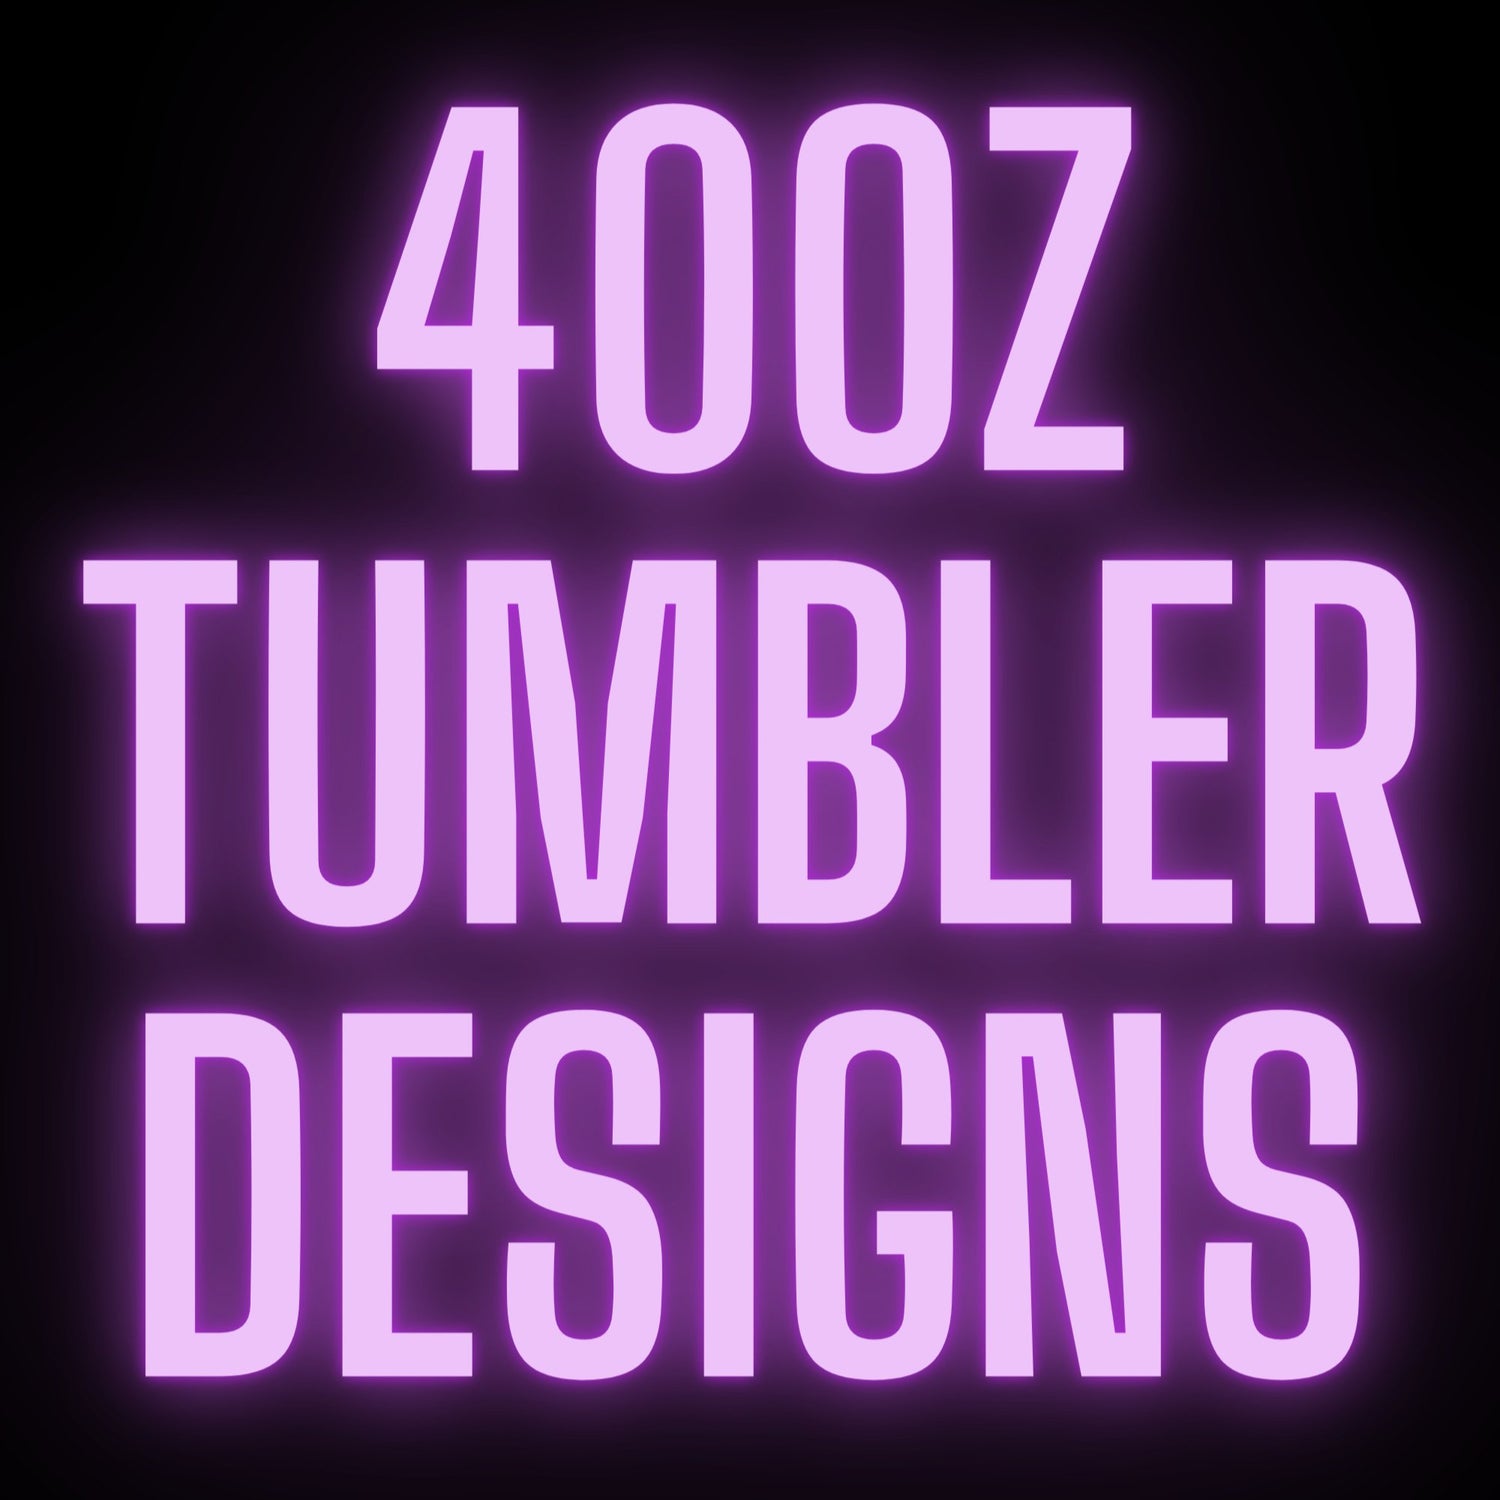 40OZ TUMBLER DESIGNS